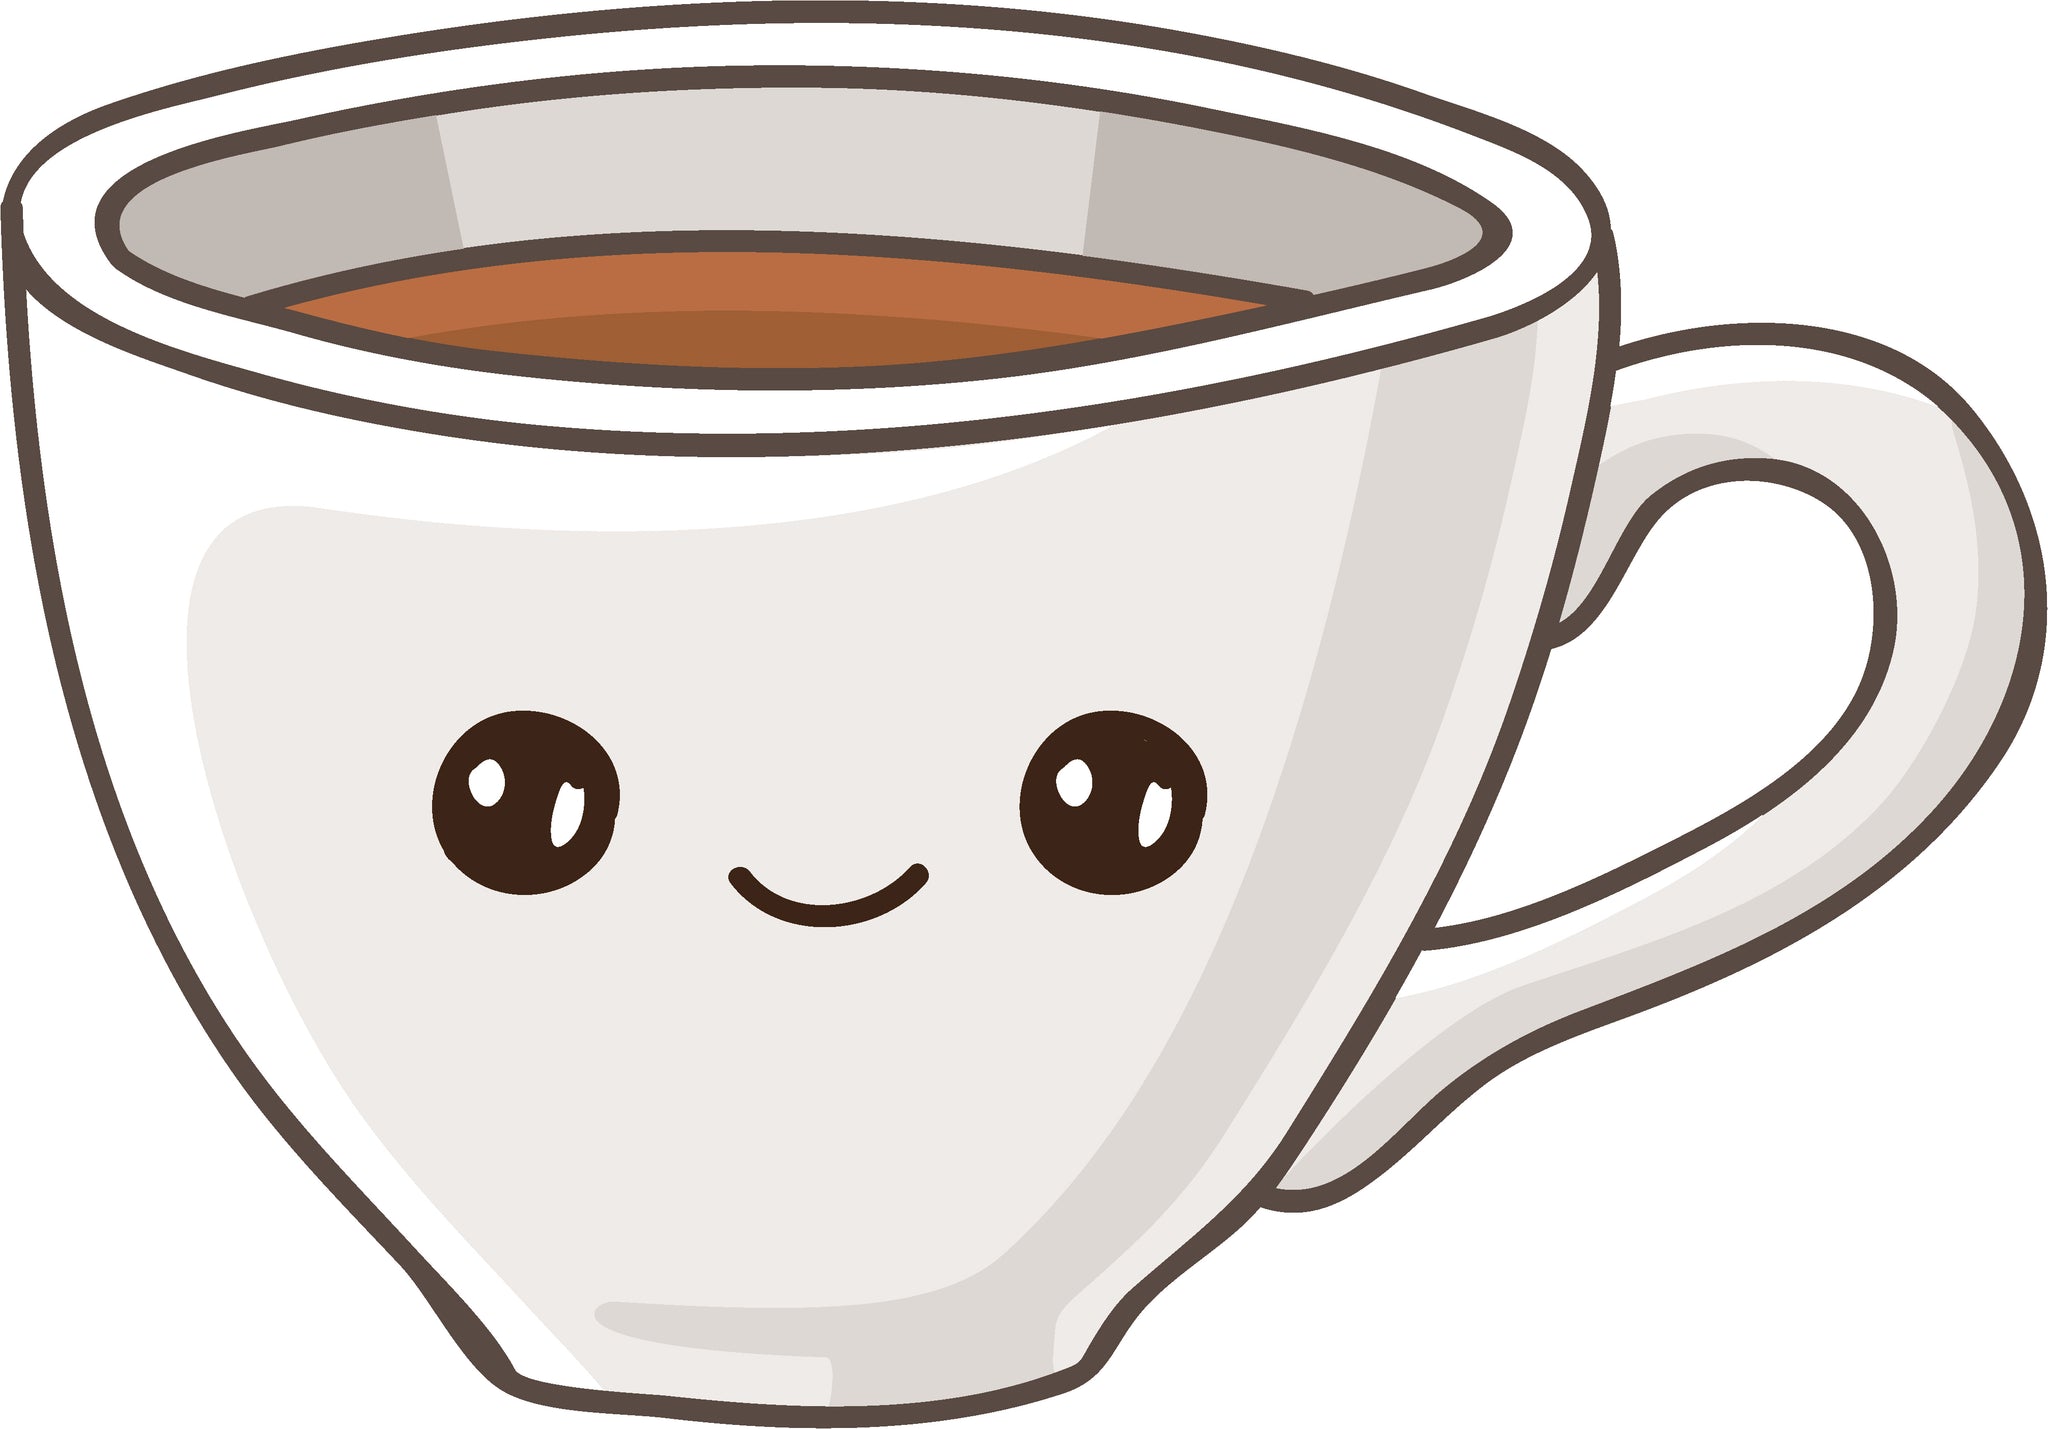 Cute Silly Cafe Coffee Tea Cup Mug Cartoon Emoji #6 Vinyl Decal Sticker